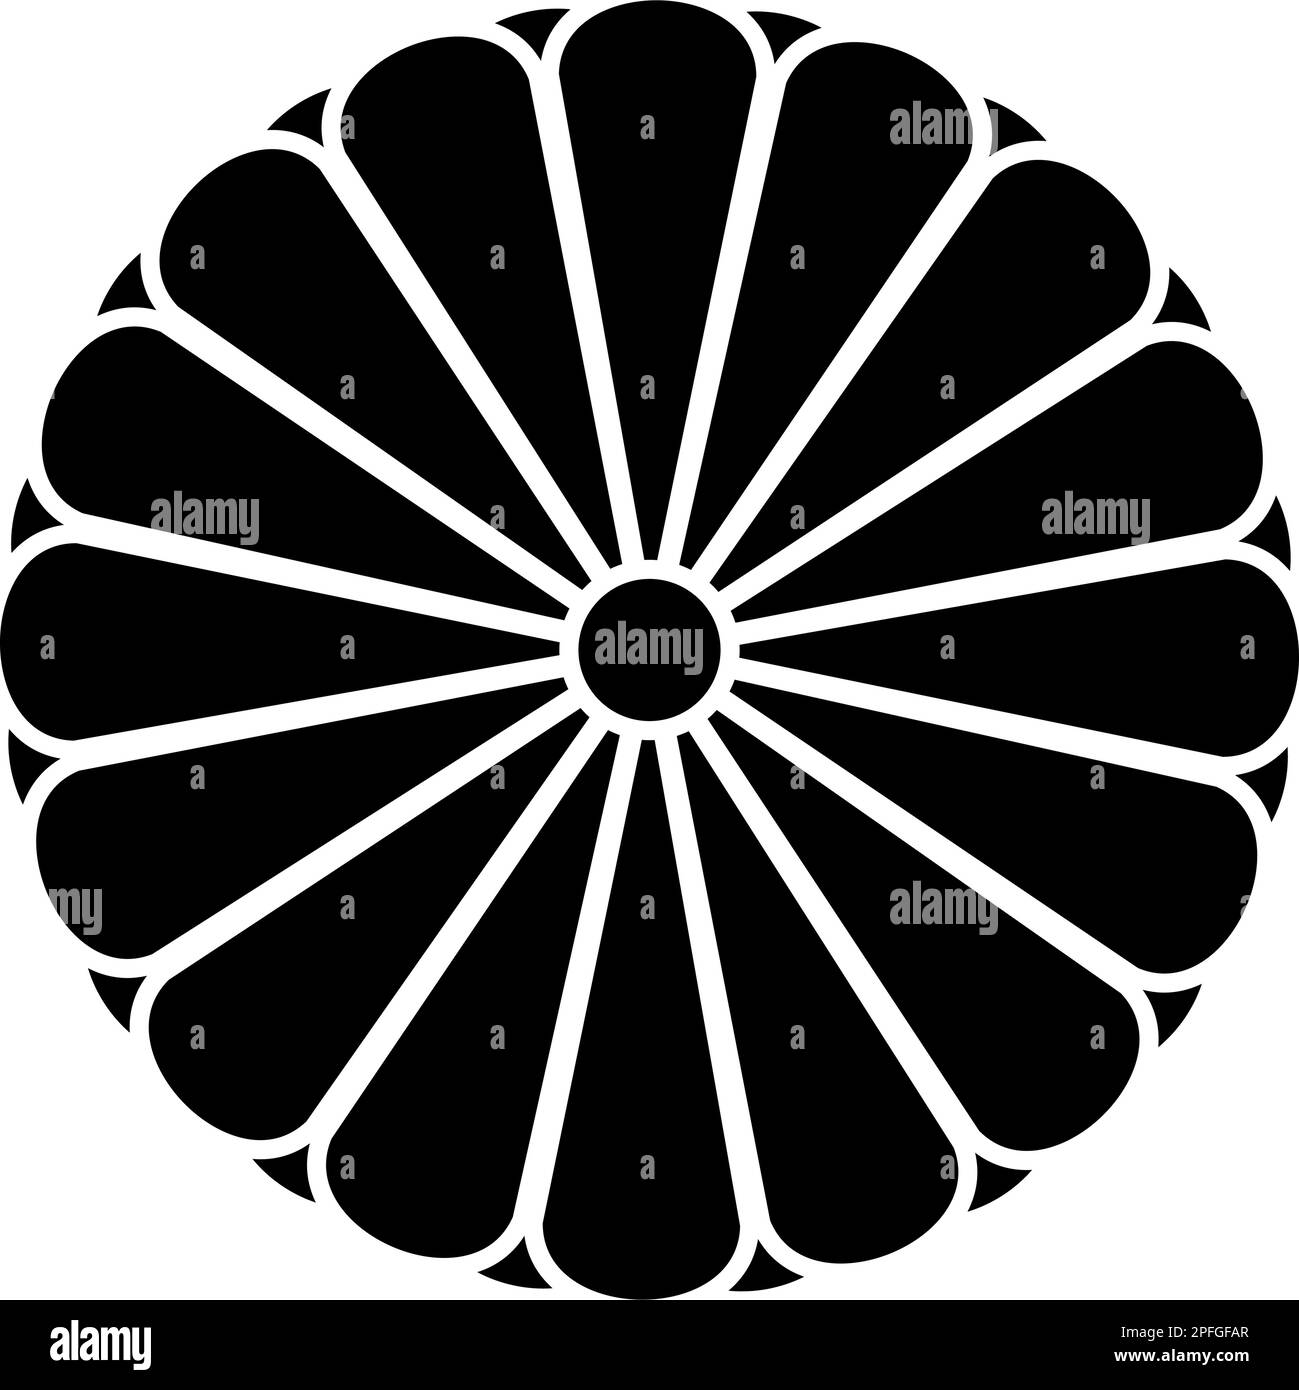 Stemma giapponese nippon Imperial Seal disco centrale con 16 petali simbolo nazionale icona nero colore vettore illustrazione immagine piatto stile semplice Illustrazione Vettoriale